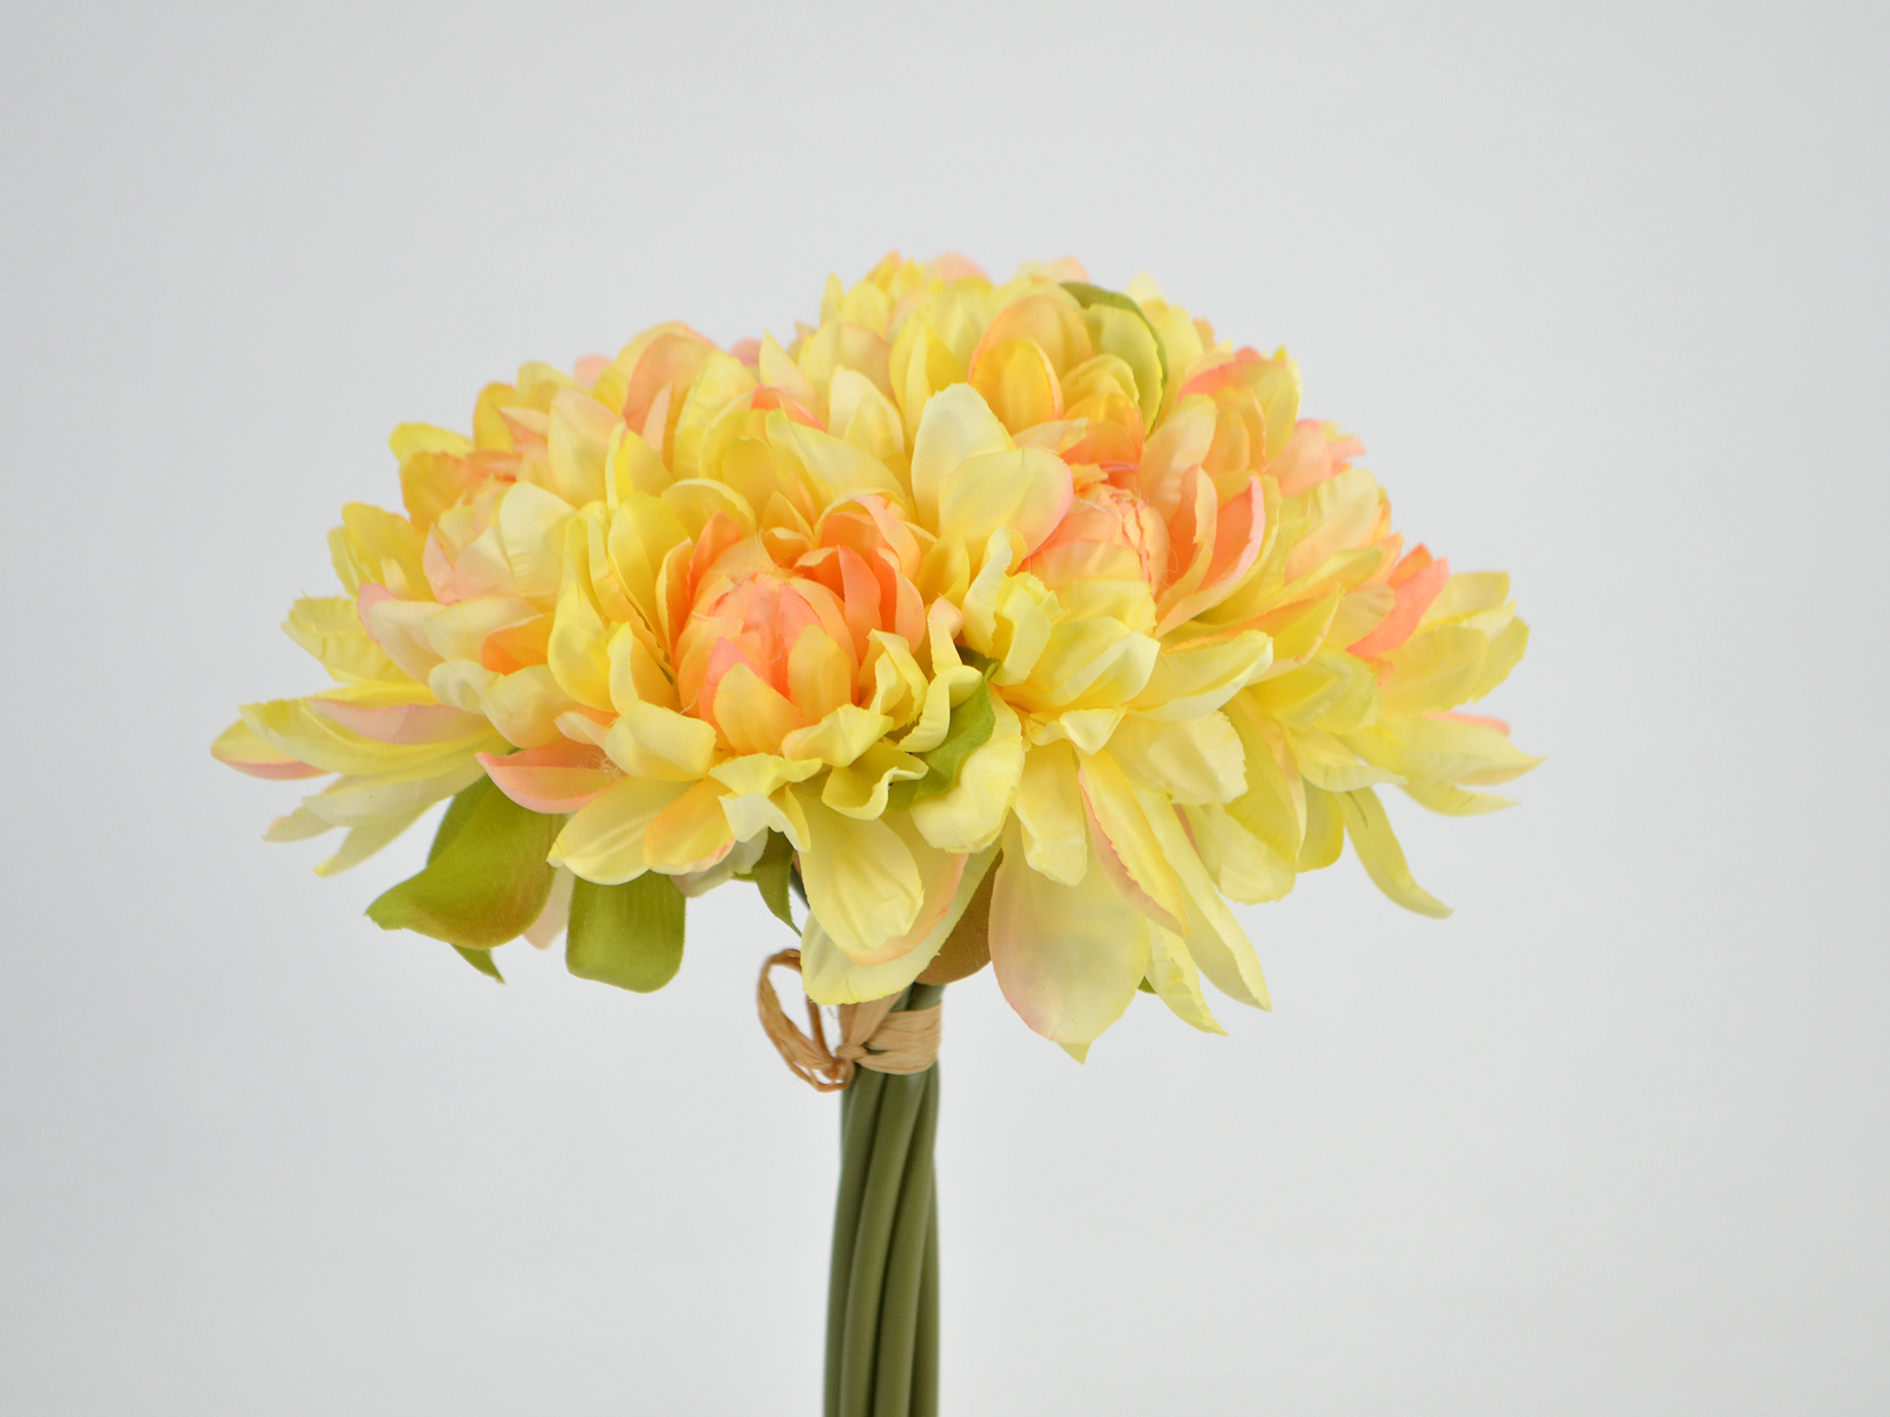 Chrysanthemen-Bündel x7, 28cm, gelb-orange